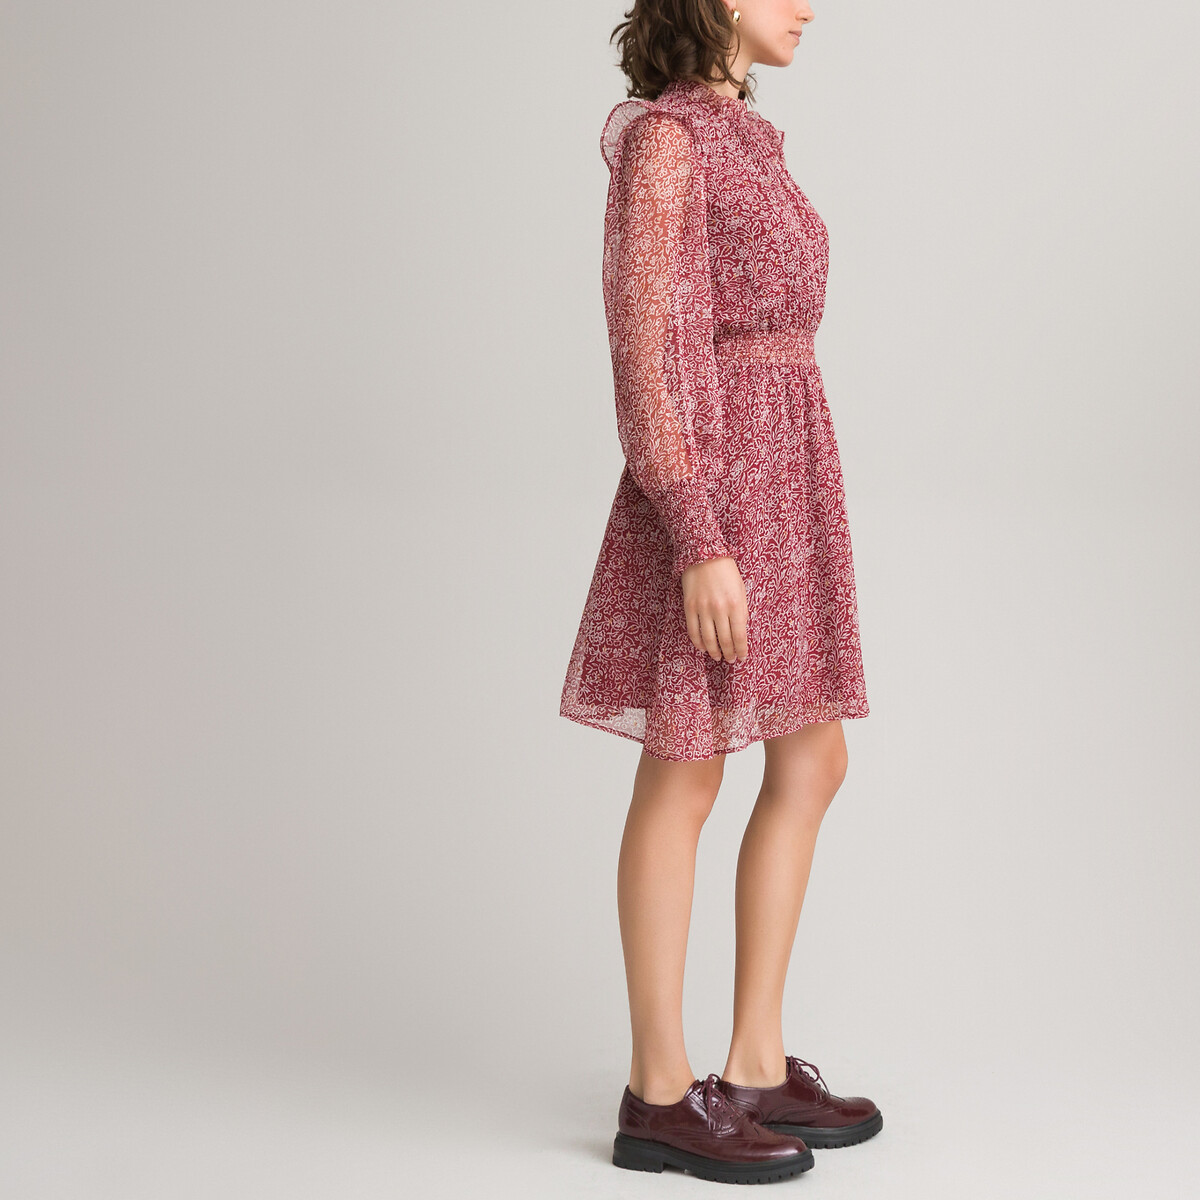 Платье LaRedoute С воротником-стойкой с воланом длинные рукава 42 красный, размер 42 - фото 2